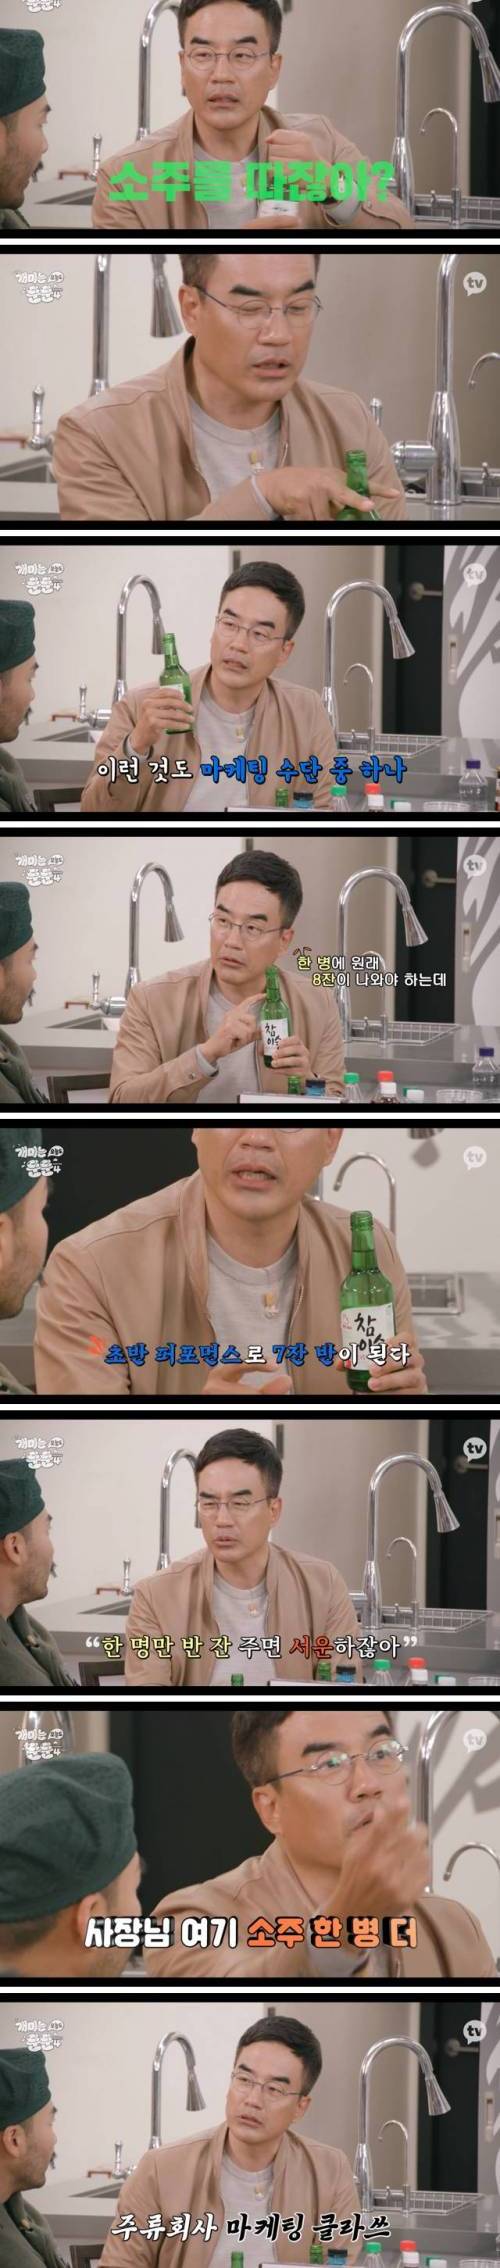 [스압] 한국사람들이 소맥을 마시게 된 이유.jpg